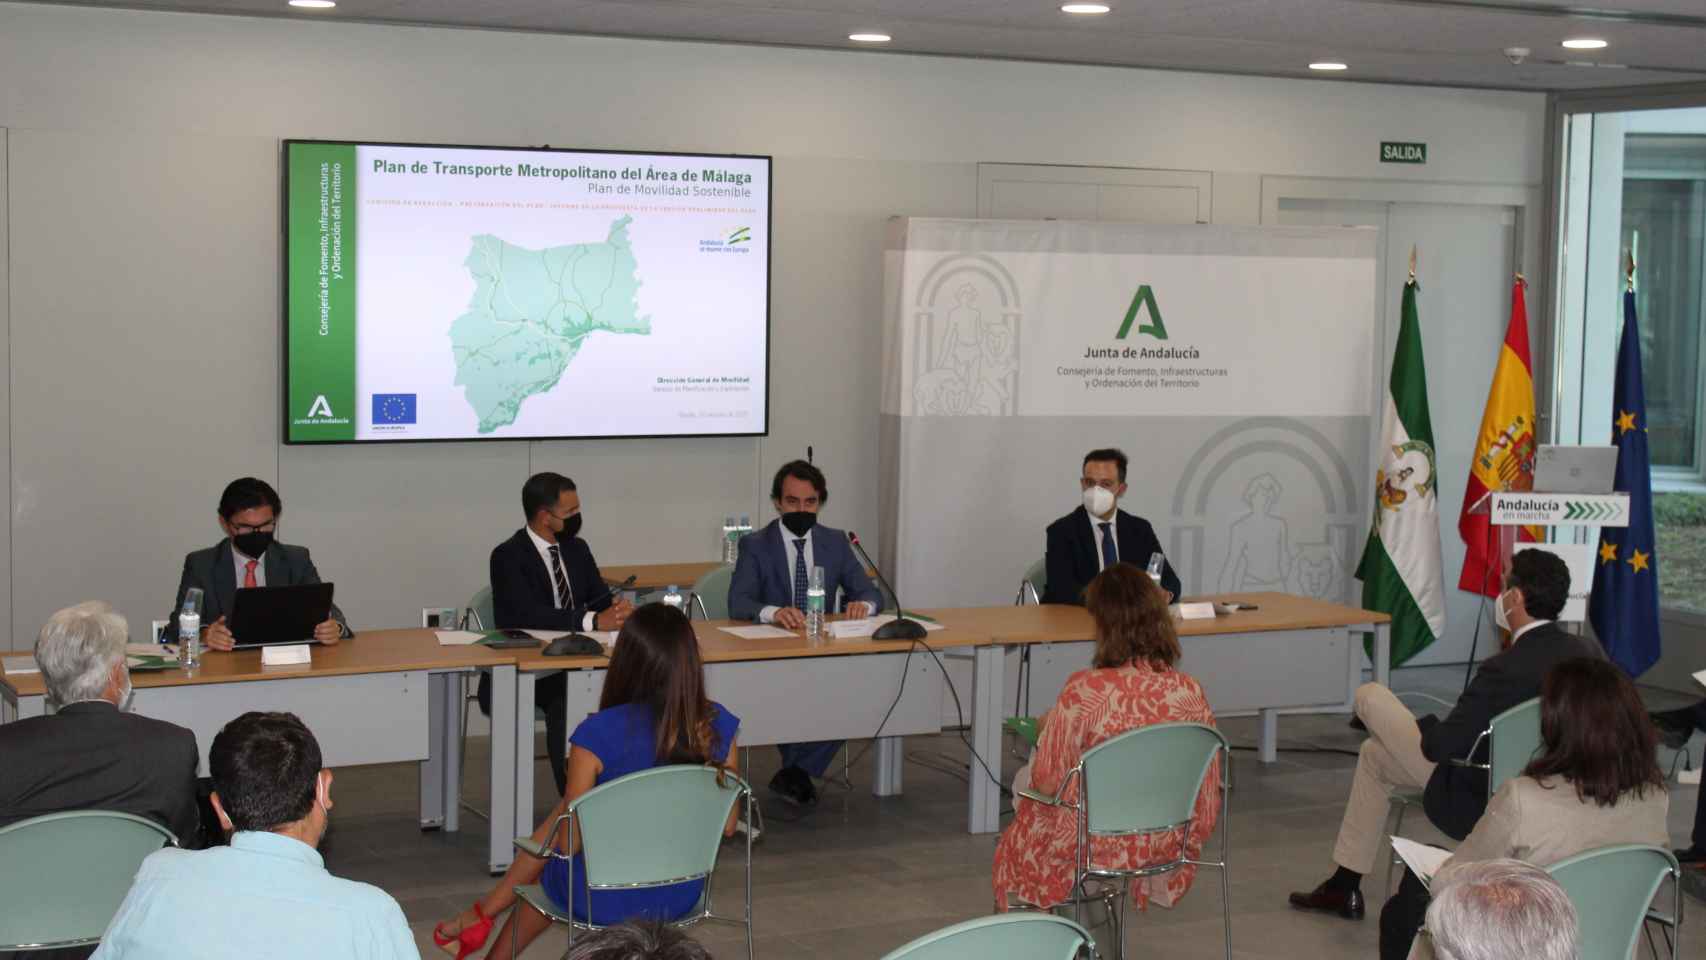 Reunión de la comisión encargada de aprobar el Plan de Transporte Metropolitano del Área de Málaga.